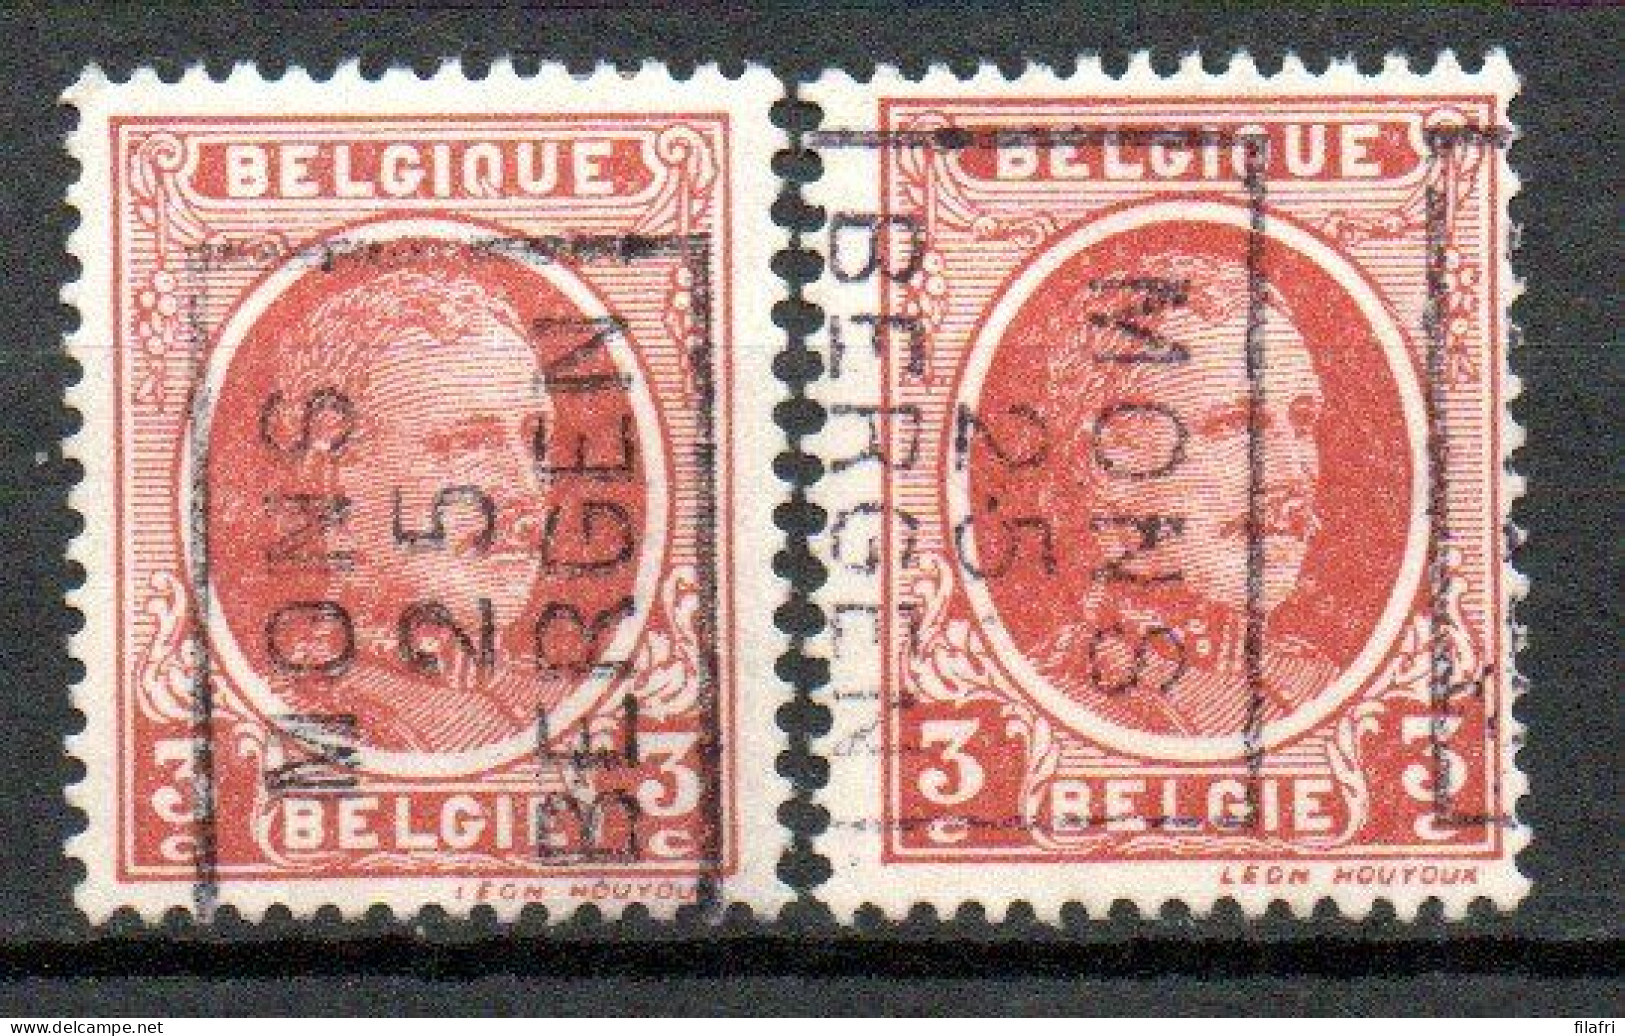 3540 Voorafstempeling Op Nr 192 - MONS 25 BERGEN - Positie A & B - Rollo De Sellos 1920-29